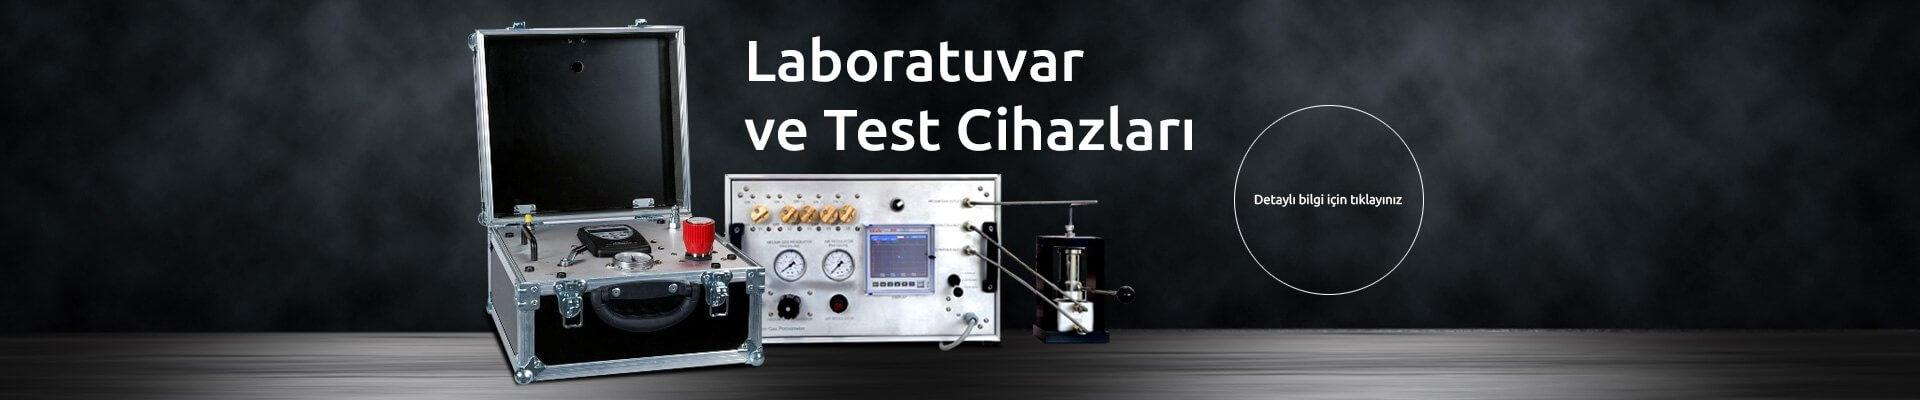 Laboratuvar ve Test Cihatları